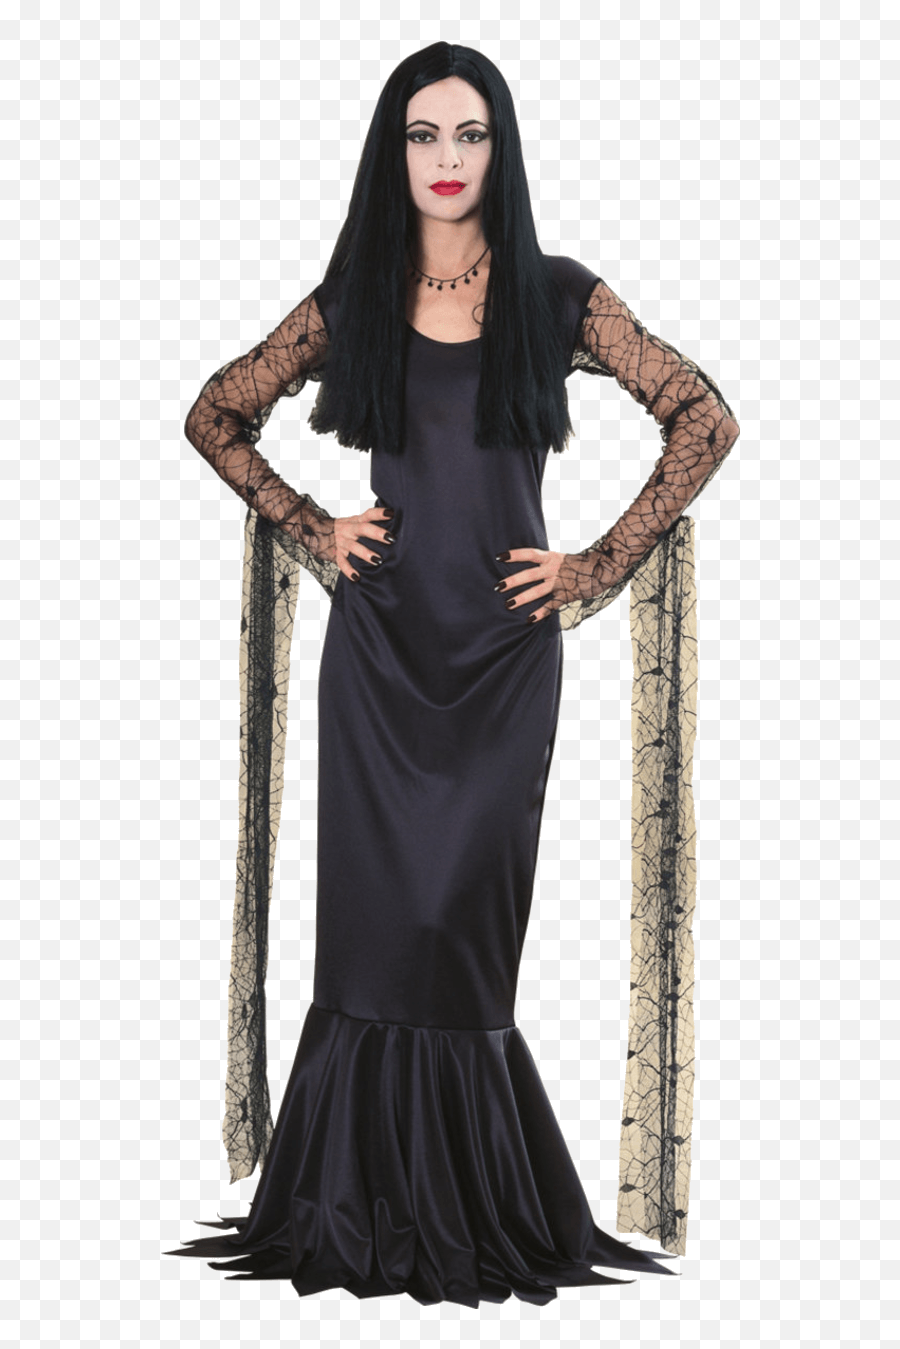 Download Free Morticia Addams Hq Image Icon Favicon - Morticia Addams Png,Addams Family Icon